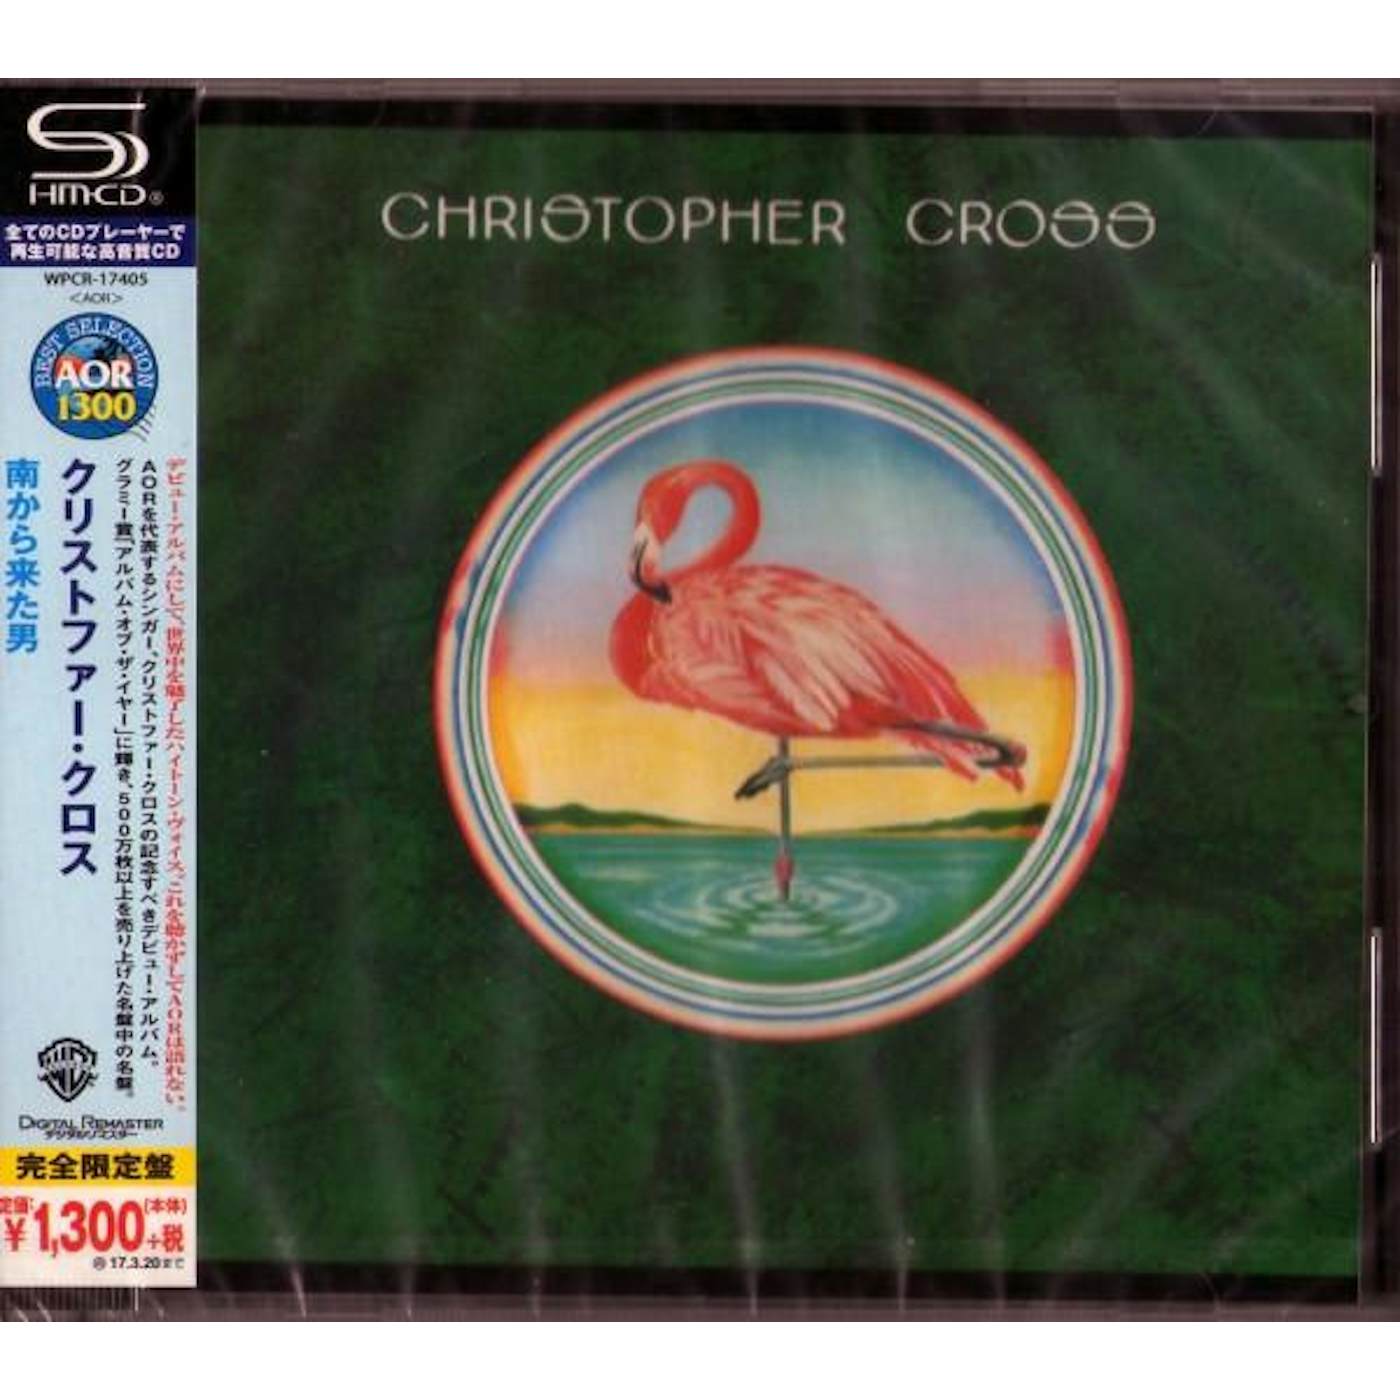 CHRISTOPHER CROSS (SHM) CD